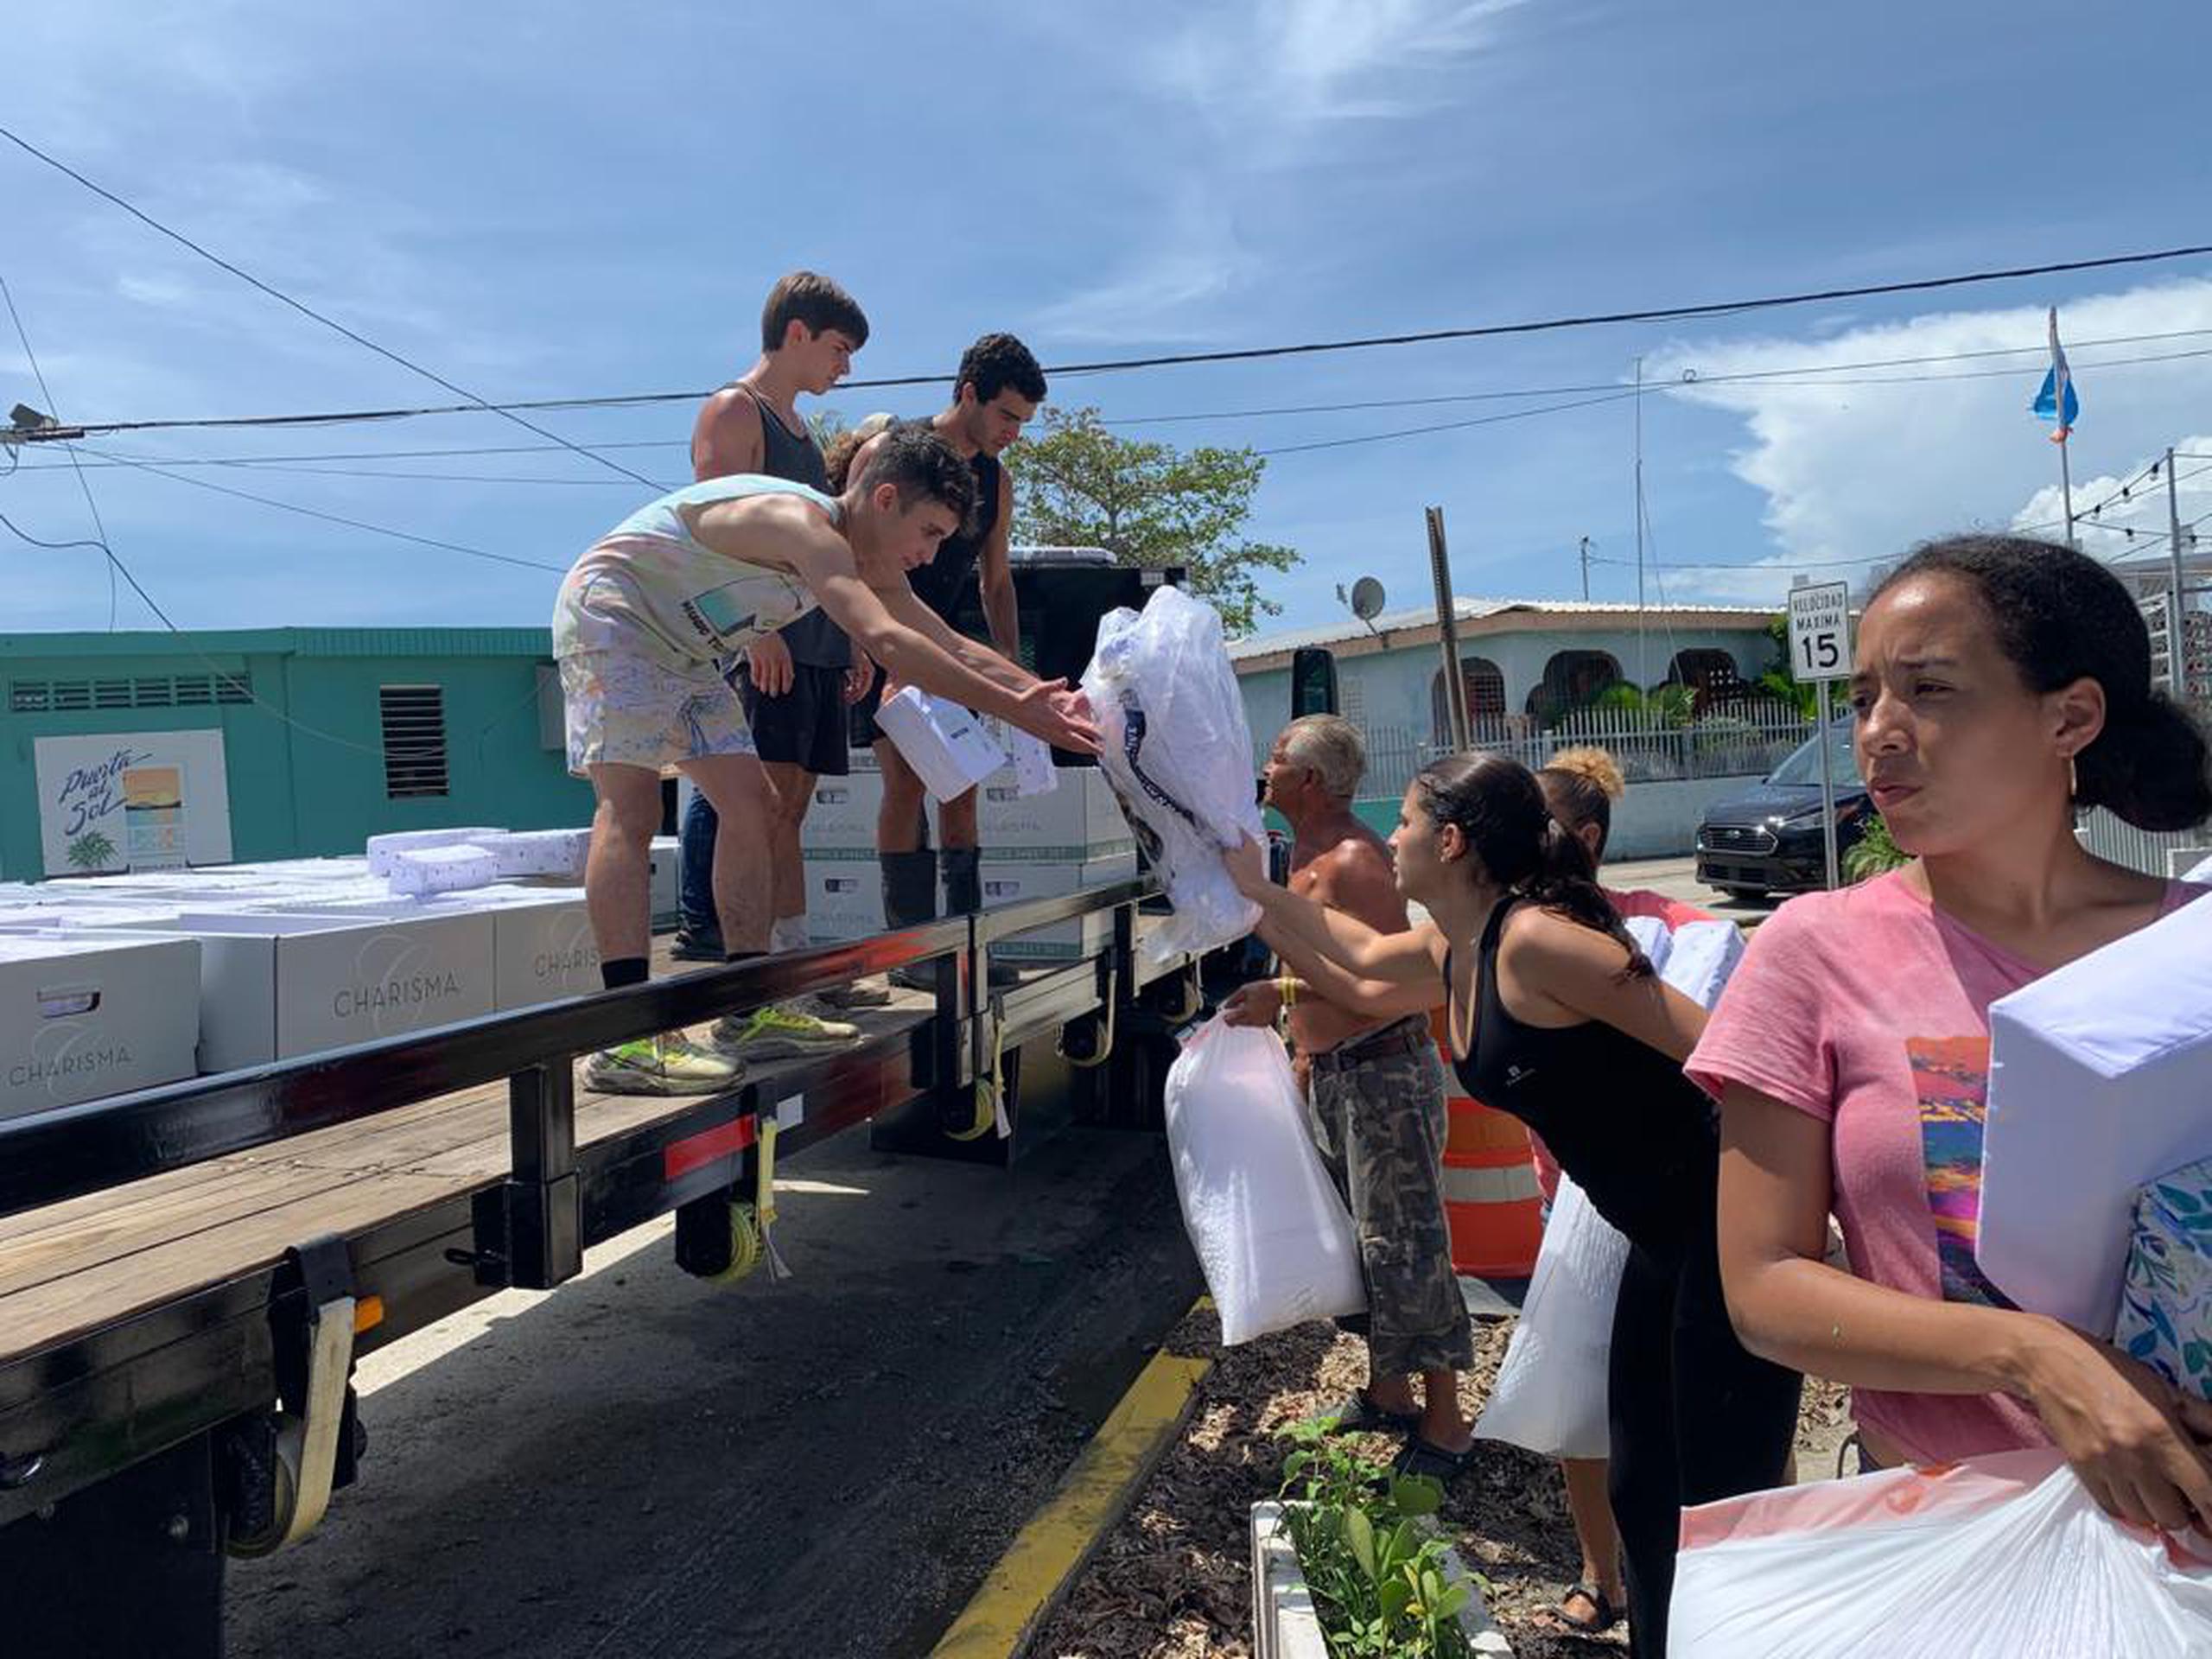 Stella Benítez y Chloe Goldberg organizaron una recaudación y entrega de suministros para las comunidades afectadas por los terremotos y huracanes que impactaron el área sur de la isla a principios del 2019.